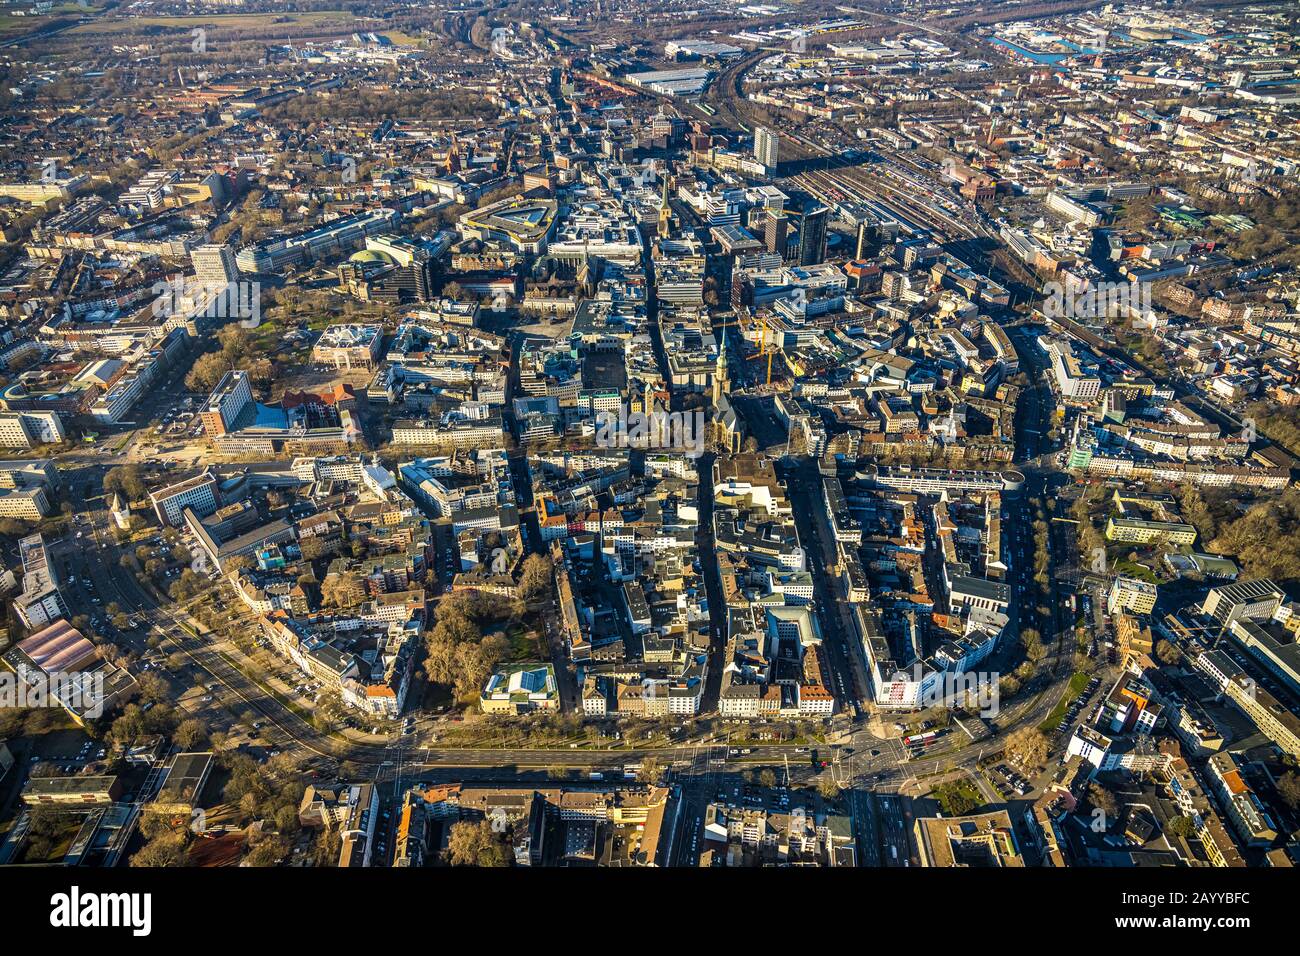 Luftbild, Übersicht Innenstadt, Stadt, Dortmund, Ruhrgebiet, Nordrhein-Westfalen, Deutschland, DE, Europa, Vogelperspektive, Luftbild, Luftbild Stockfoto